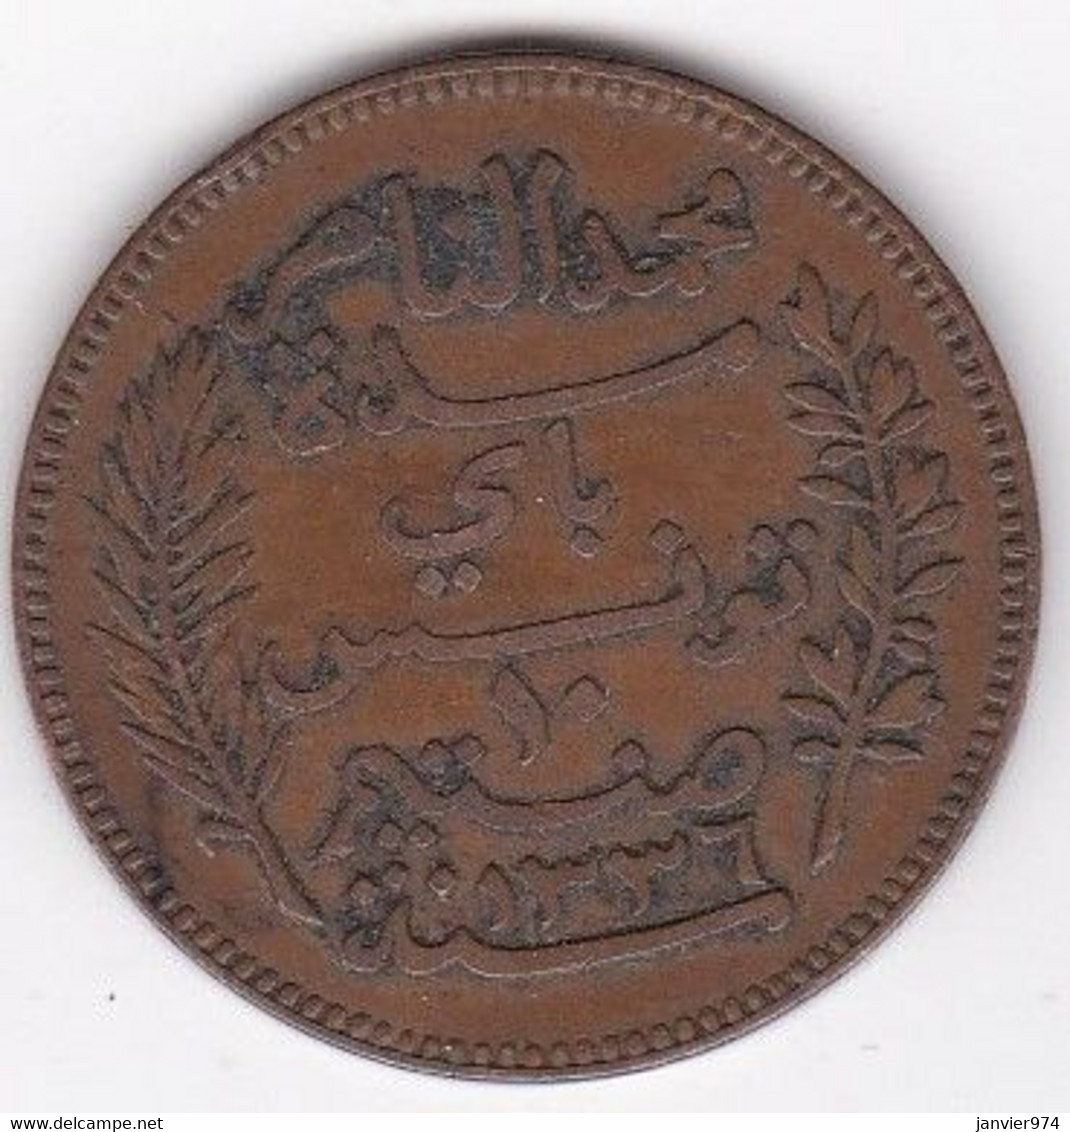 Protectorat Français . 10 Centimes 1917 A , En Bronze, Lec# 106 - Túnez